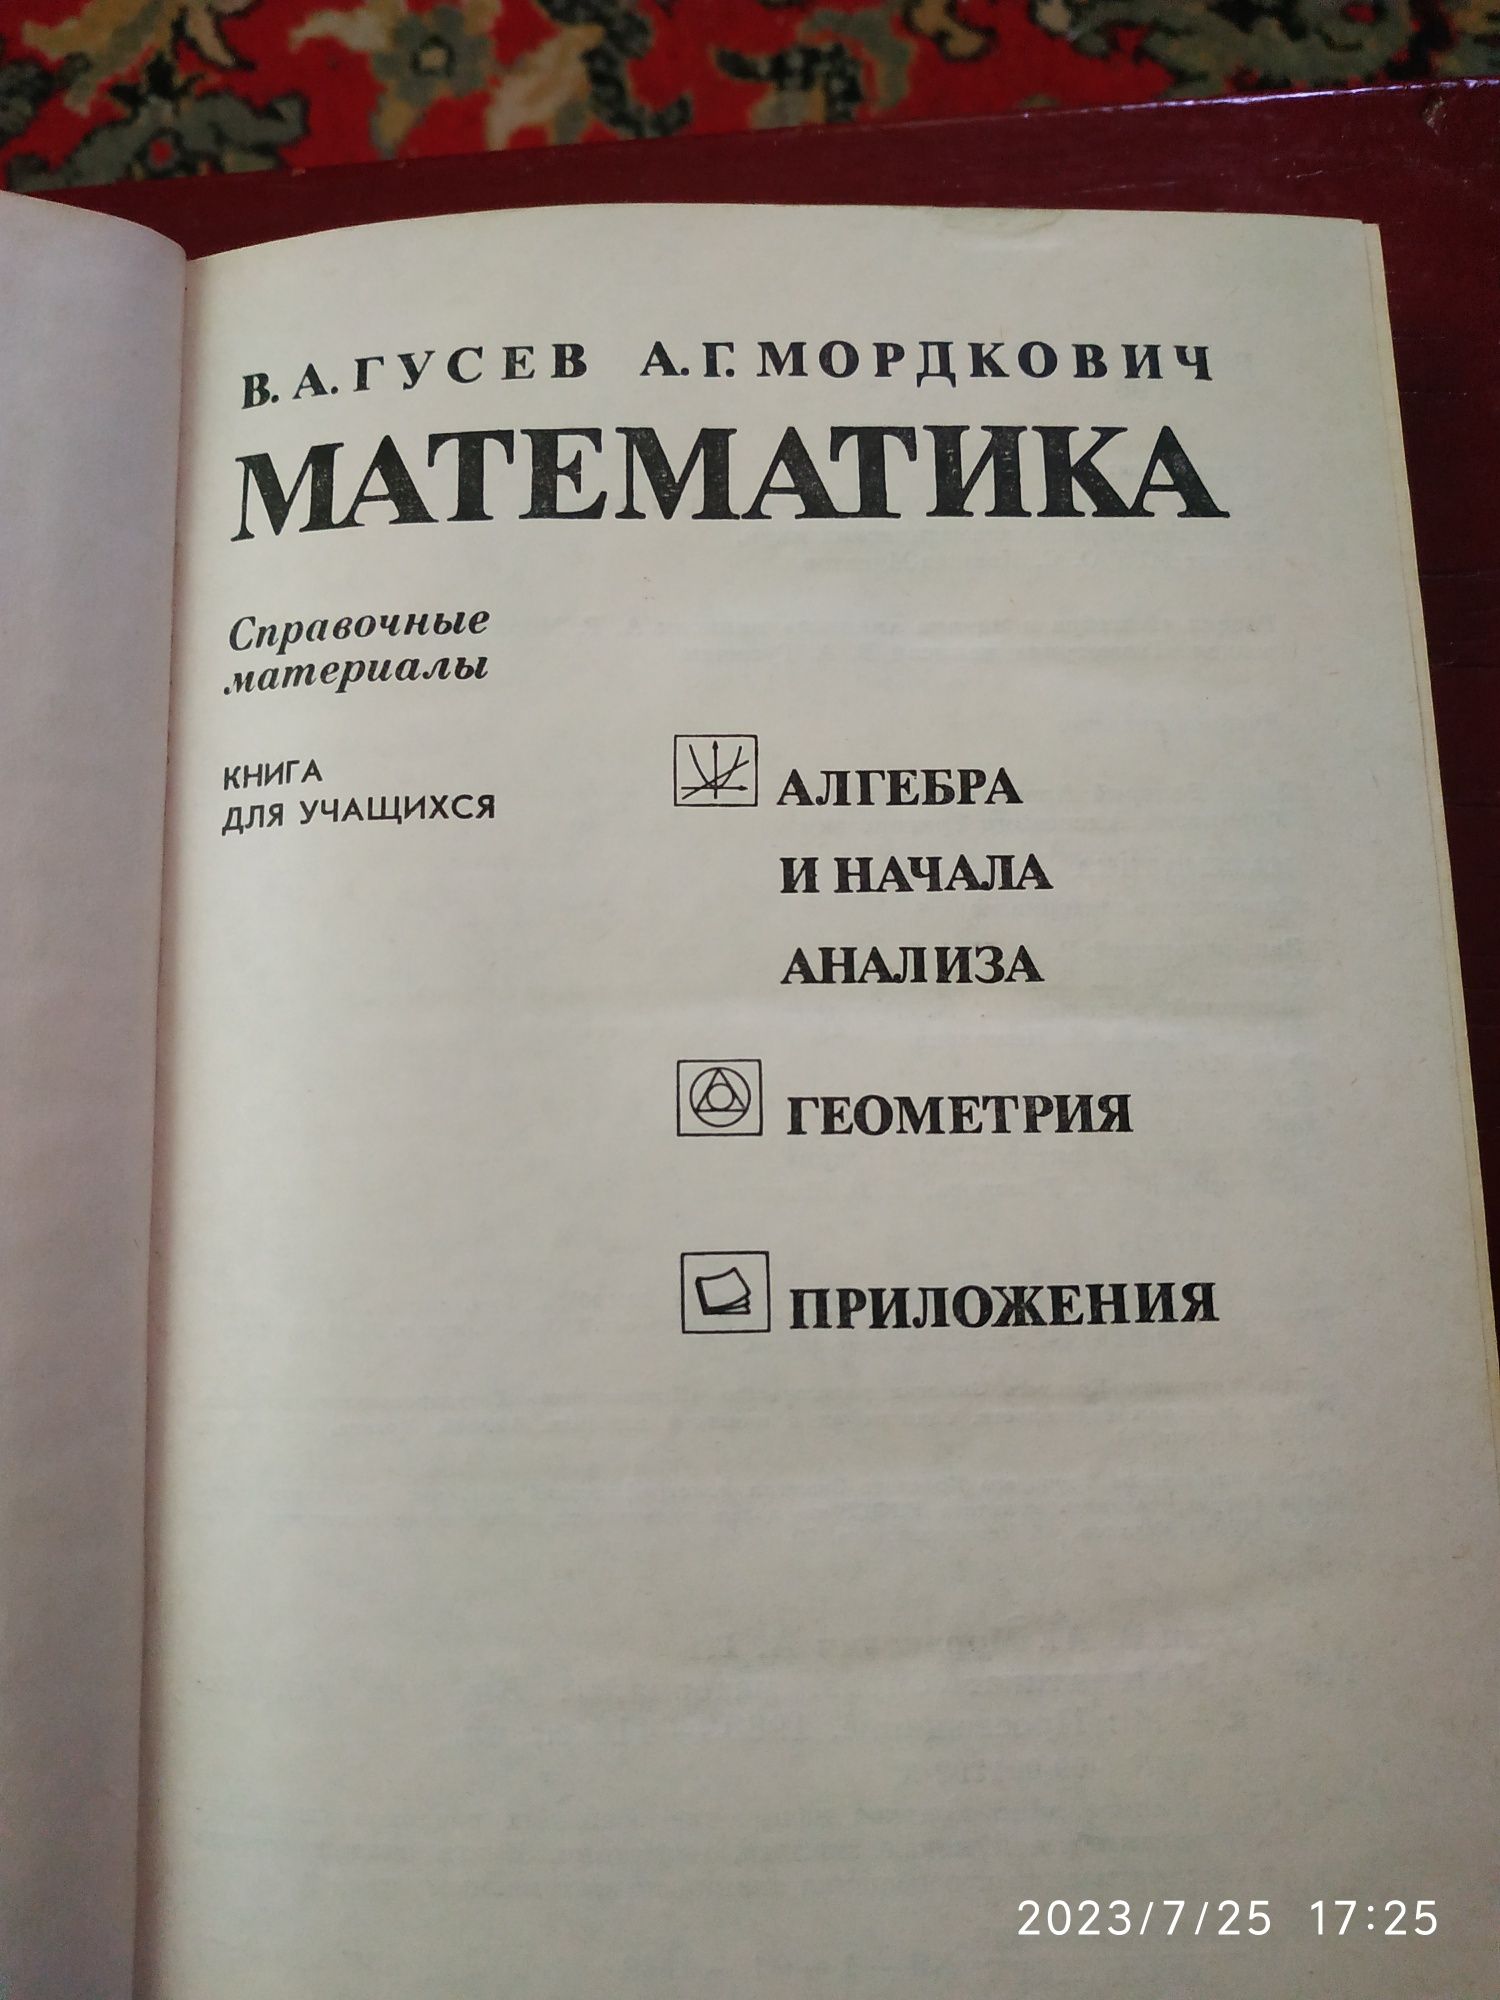 Справочник по математике, Энциклопедия по математике, программированию